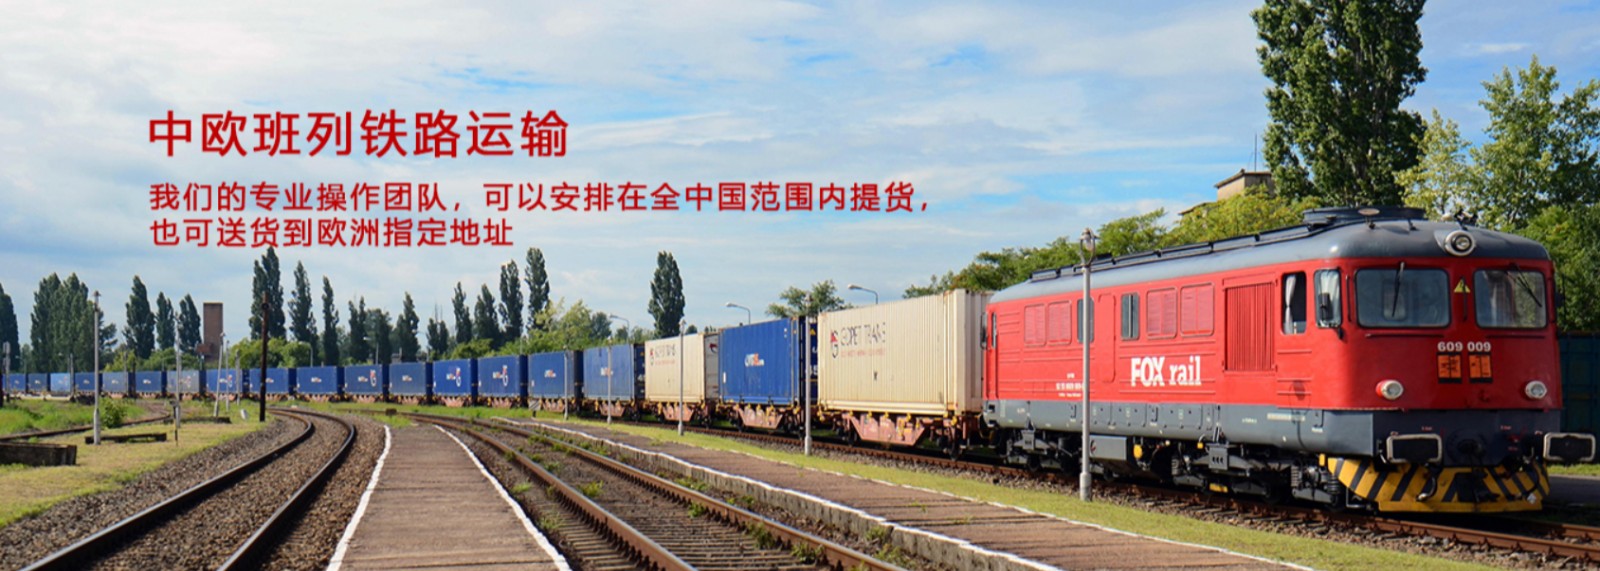 中亚班列 中亚铁路运输有限公司 中亚班列班次查询 班列口岸 班列航程